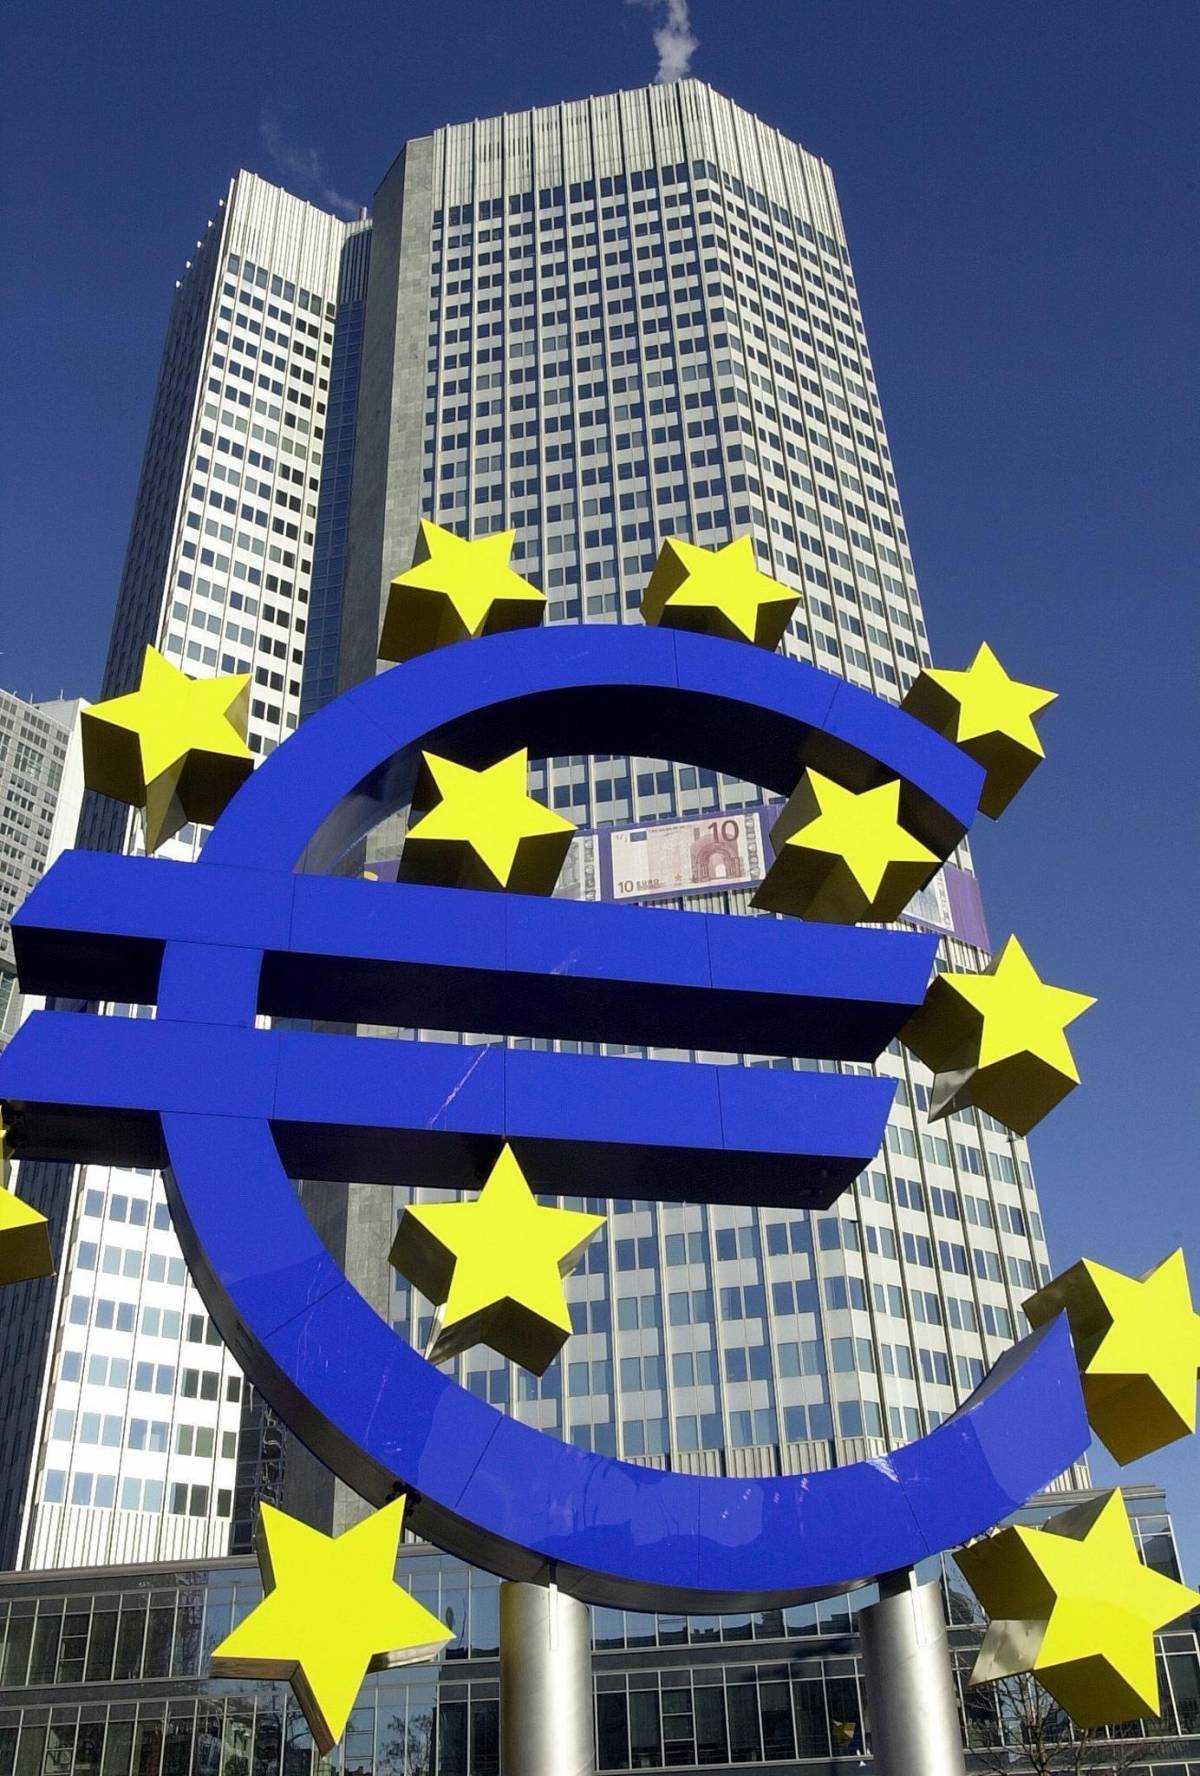 "I funzionari della Bce incontrano banchieri privati prima di prendere decisioni chiave"